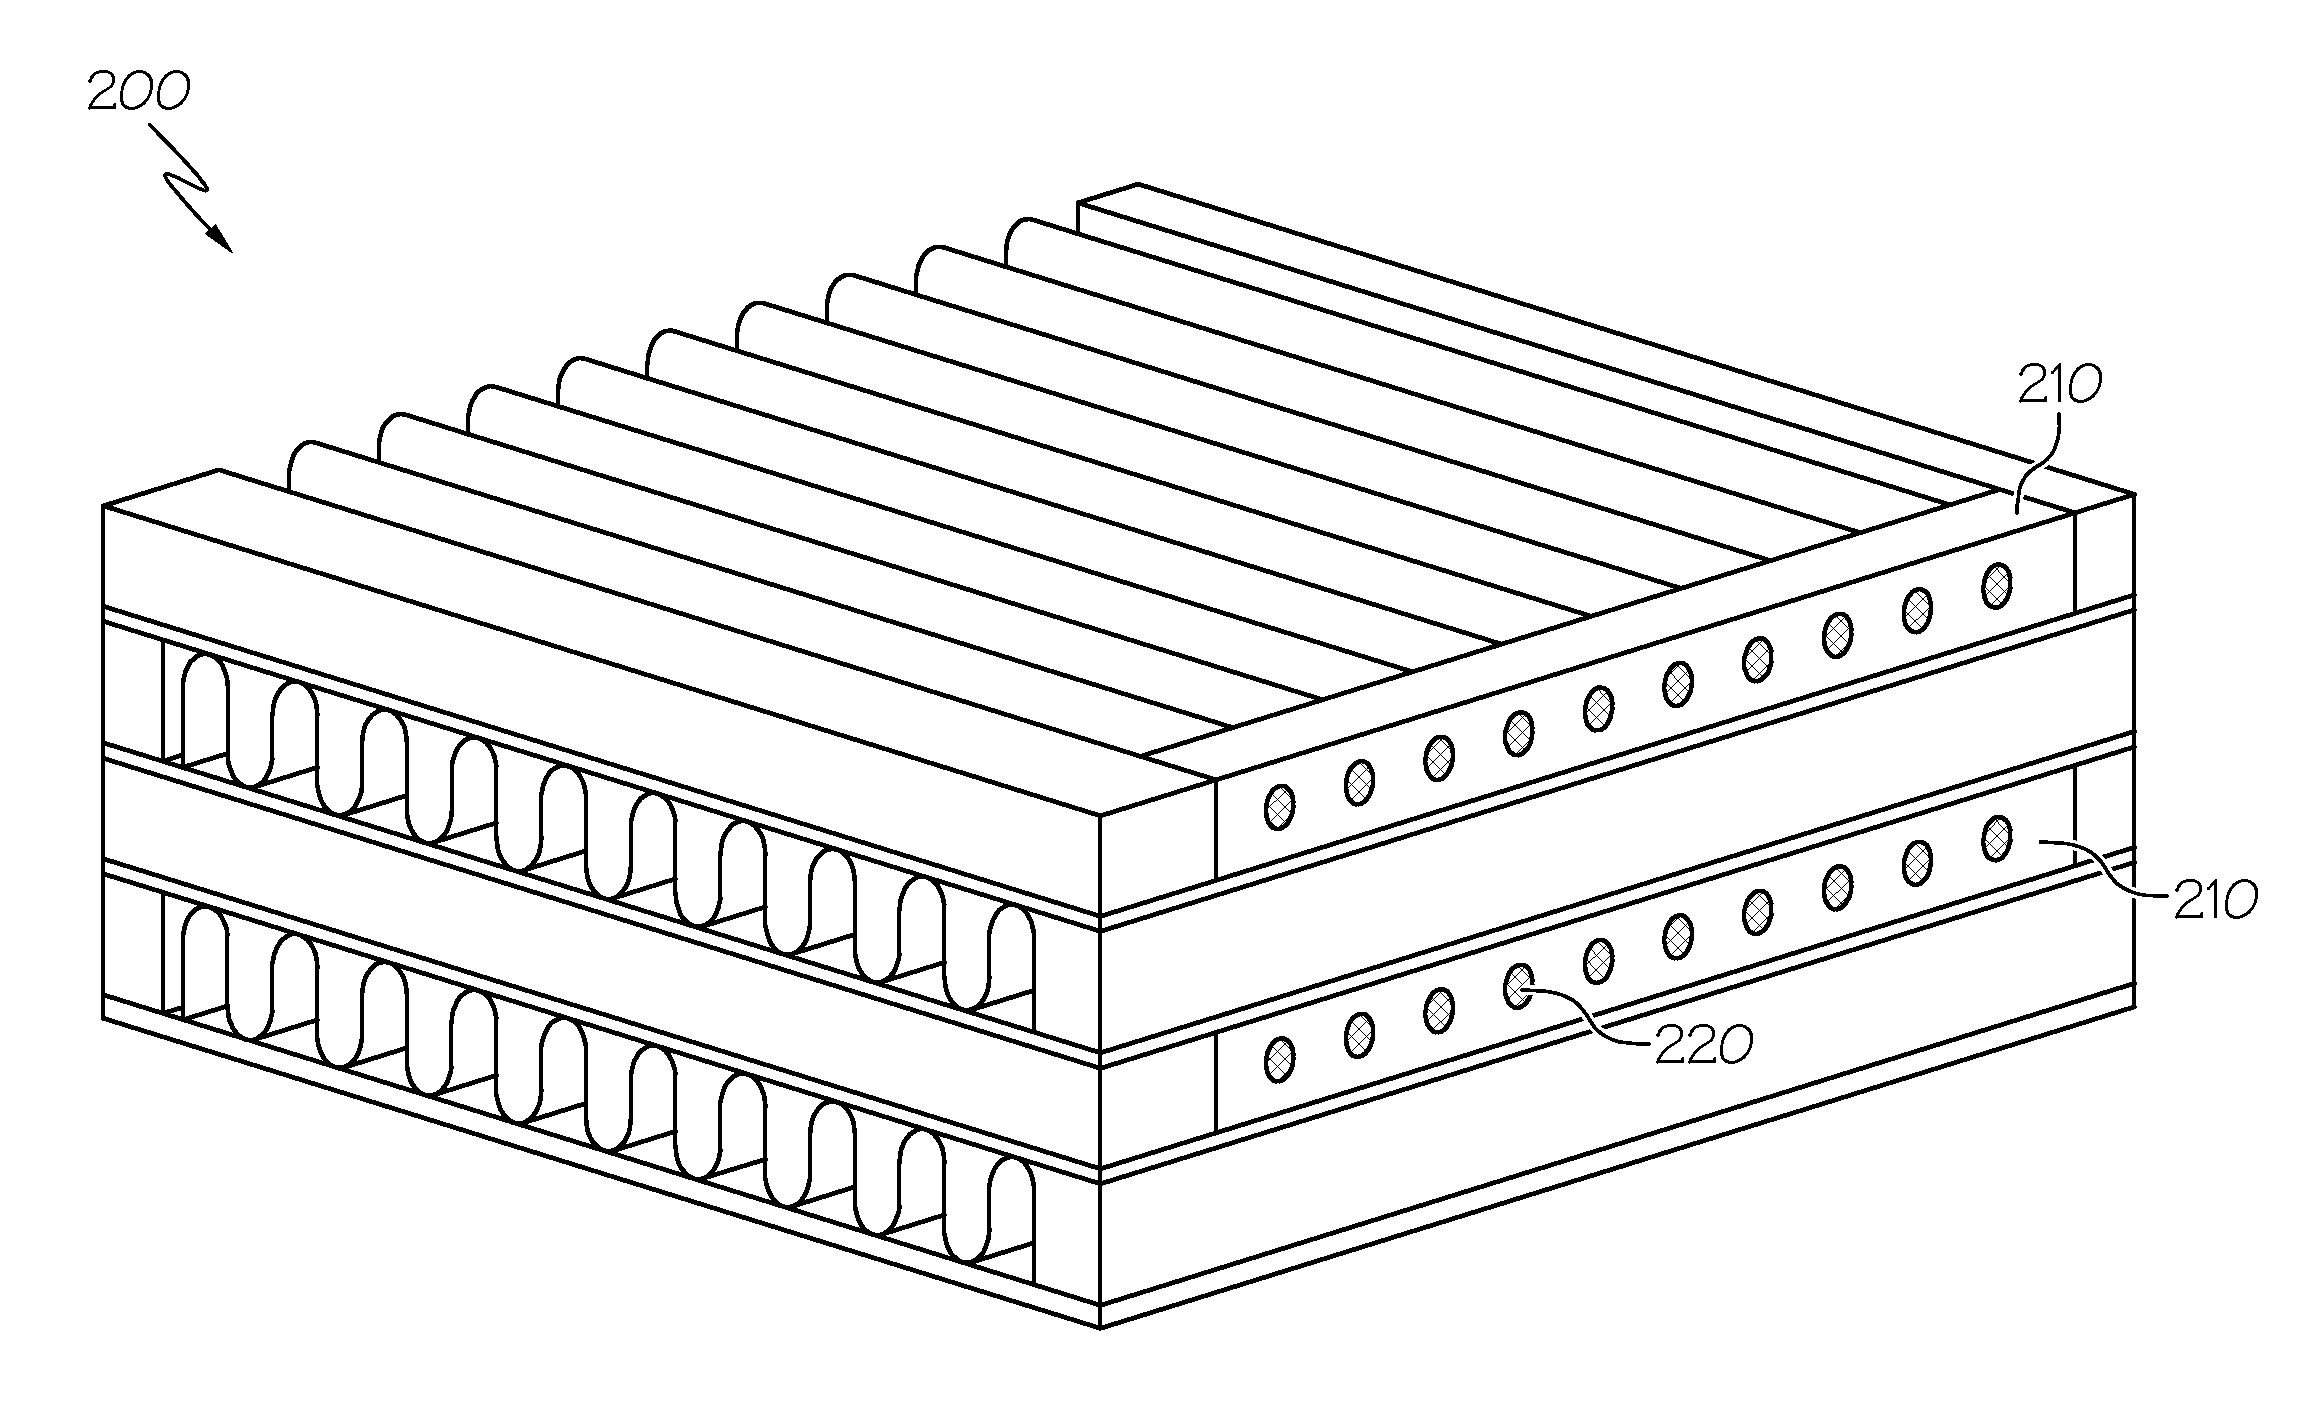 Plate-fin heat exchanger with a porous blocker bar